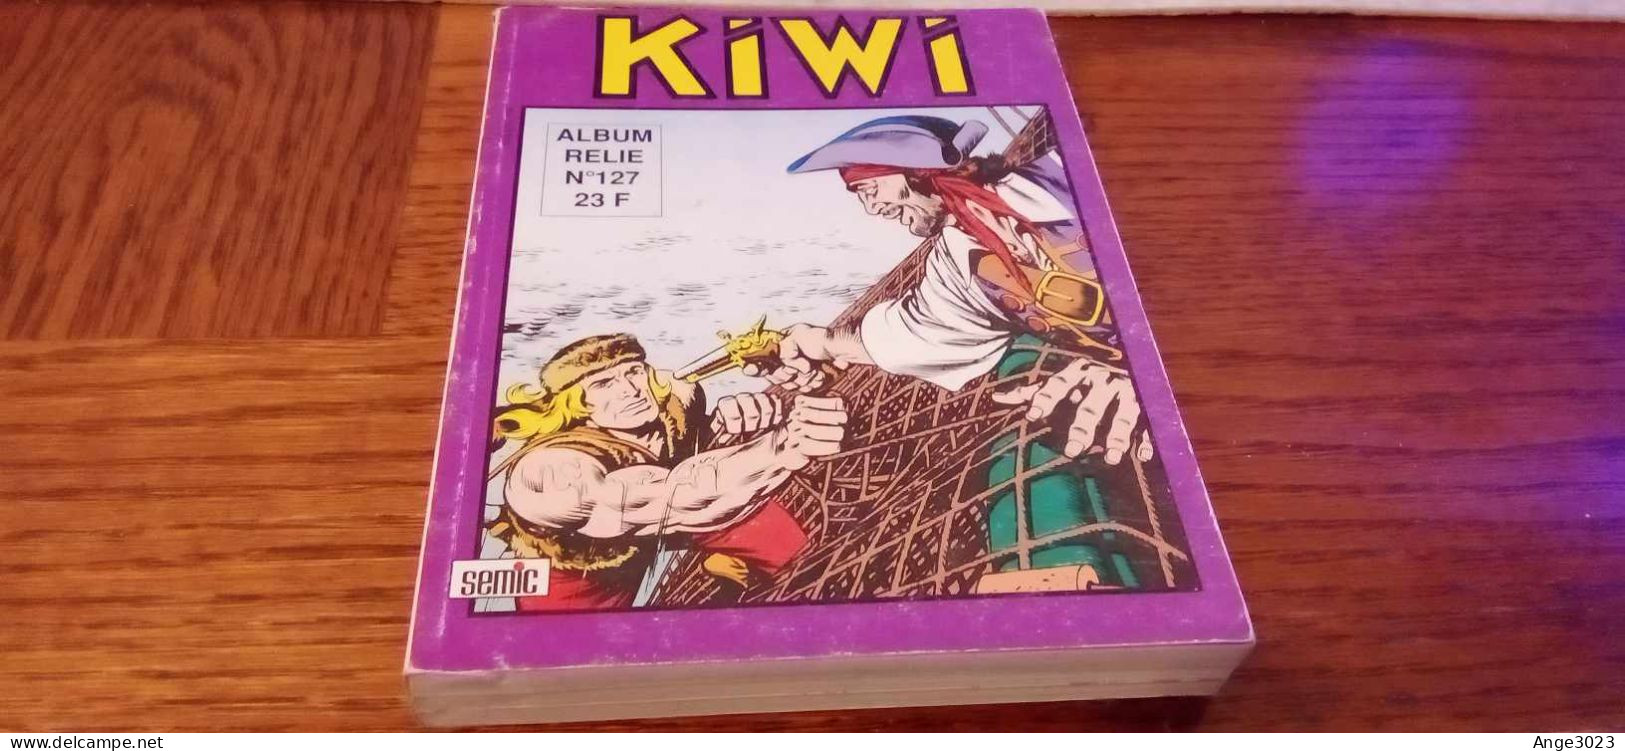 KIWI Album Relié N°127 - Kiwi